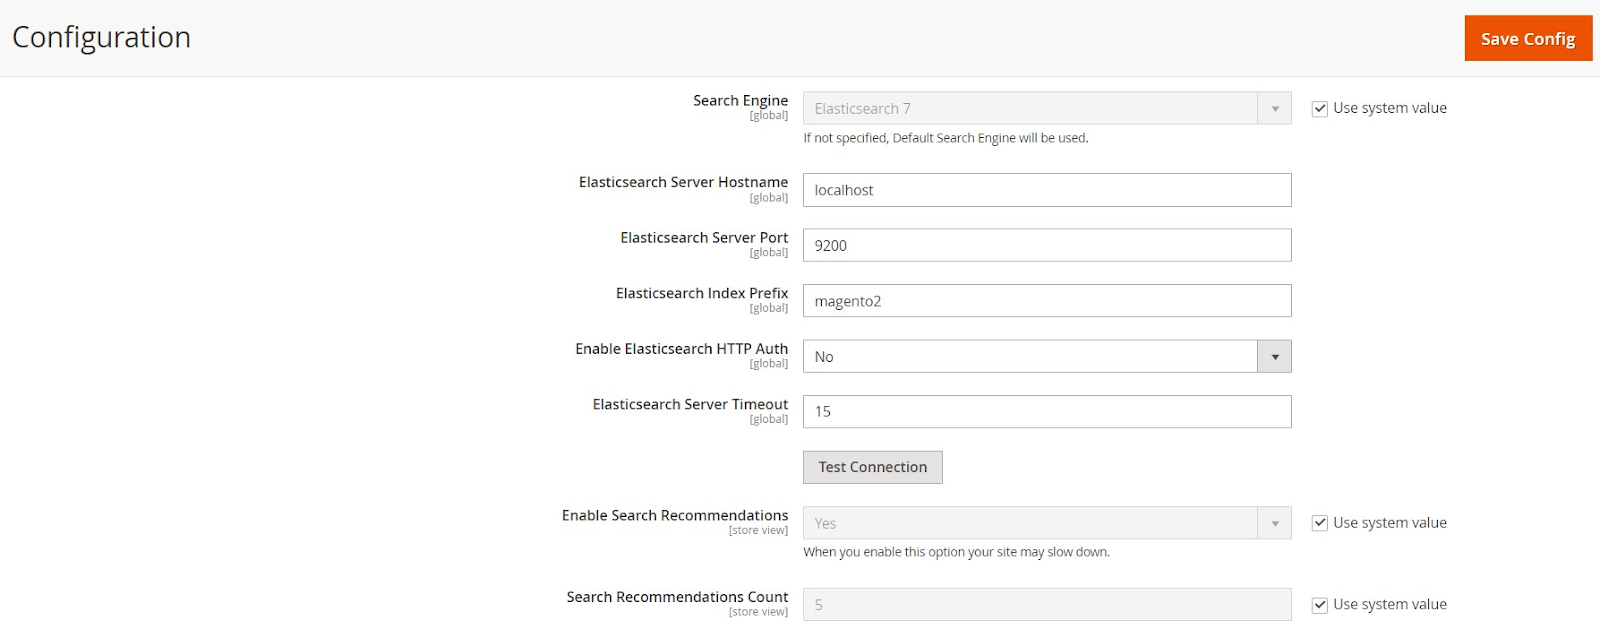 ElasticSearch 7 Configuration